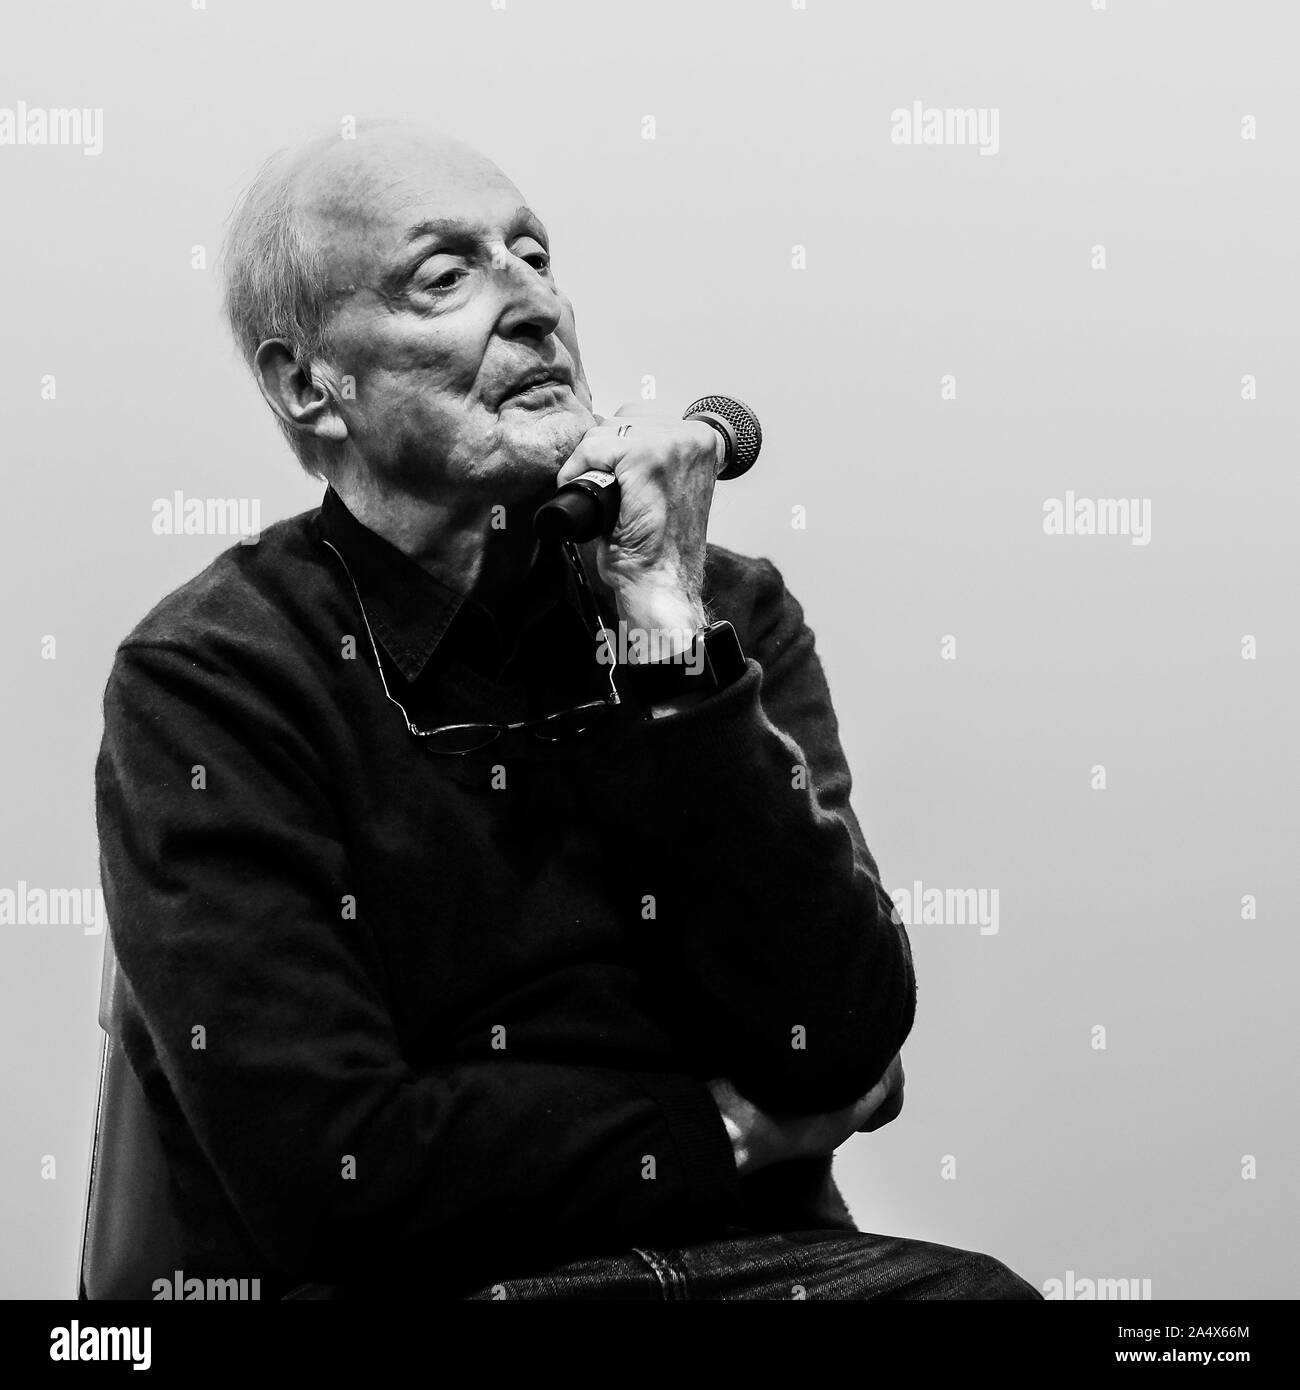 Il compositore David Shire a Sleepy Hollow Film Festival di sabato 12 ottobre 2019 a Warner biblioteca, Tarrytown. David Shire è stato intervistato dopo uno screening pf Ritorno a Oz. Foto di Julie Edwards. Foto Stock